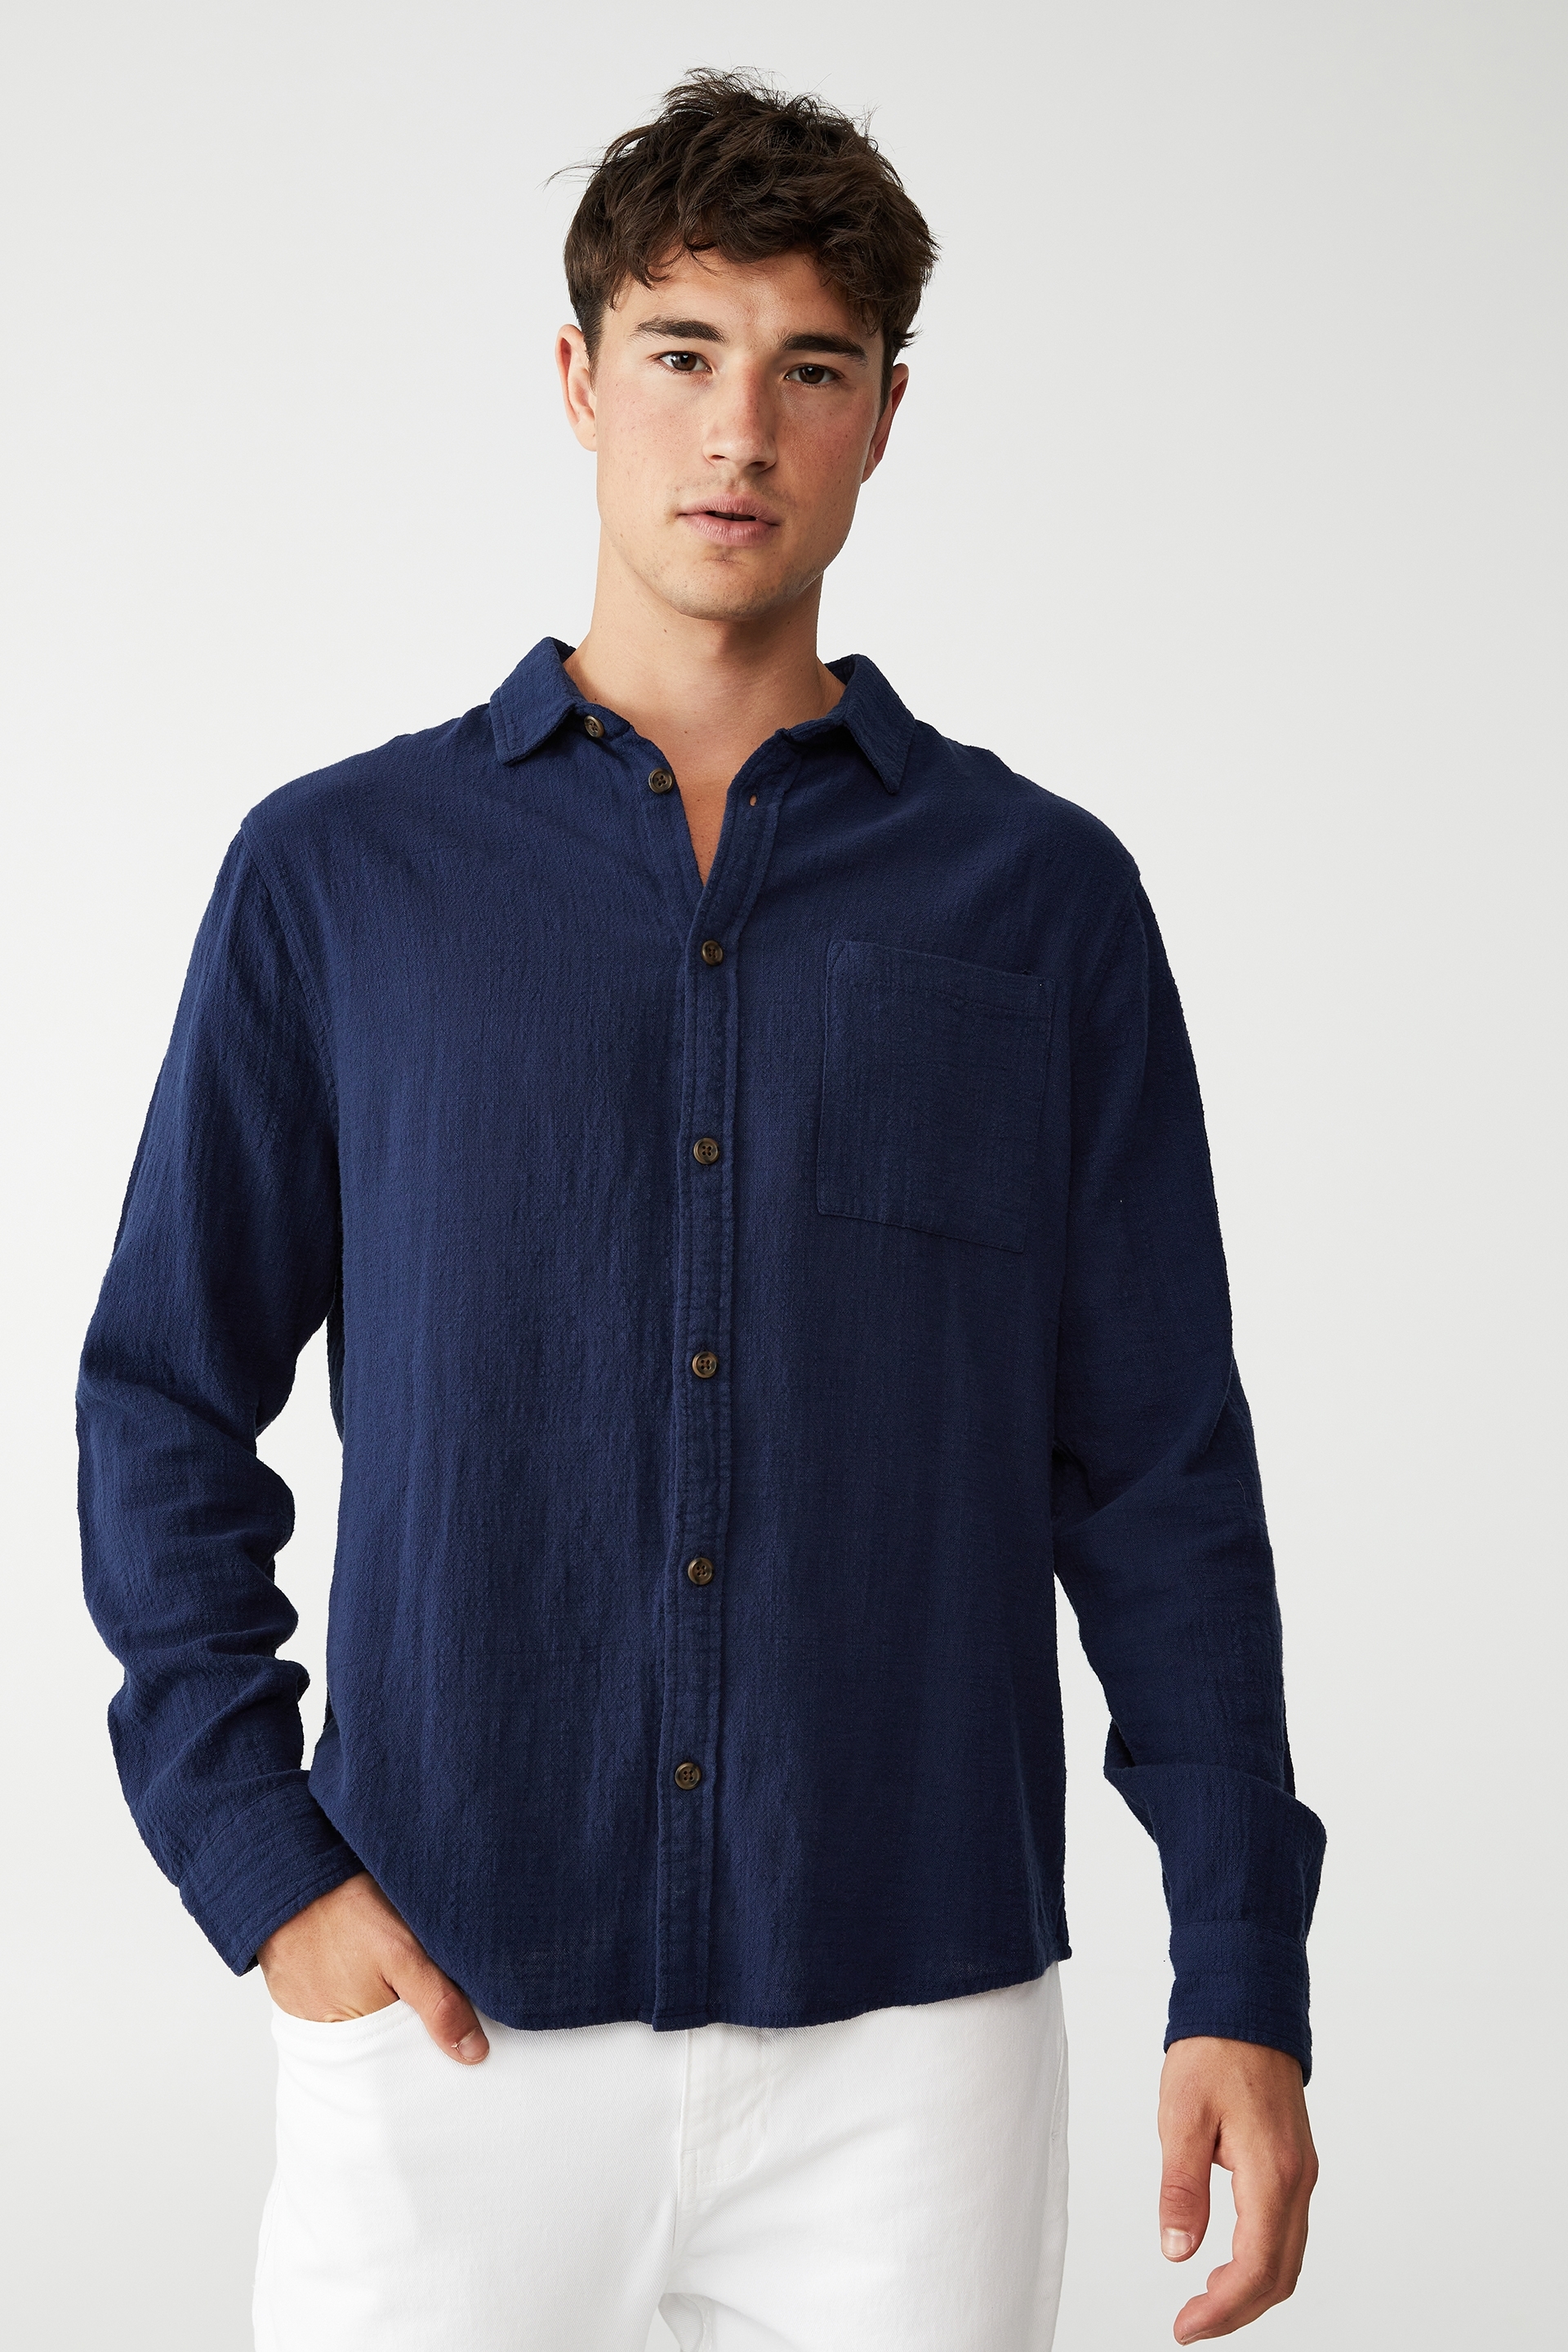 Cotton On Men - Camden Long Sleeve Shirt - Indigo